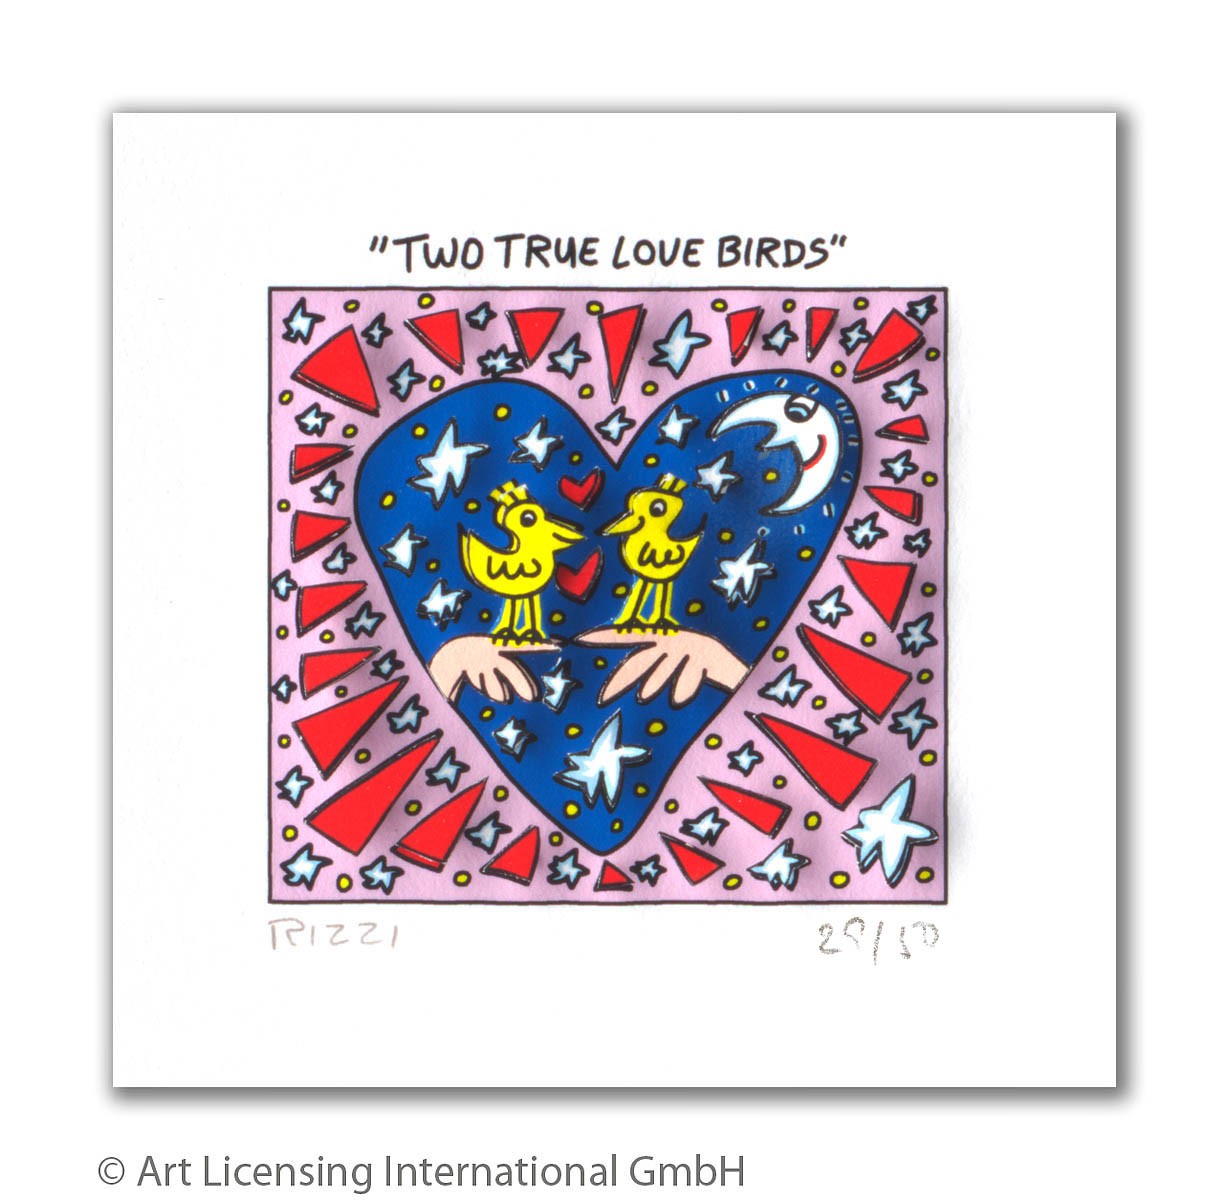 James Rizzi - TWO TRUE LOVE BIRDS - Original 3D Bild drucksigniert - ohne Rahmen PP-Normale Nummer